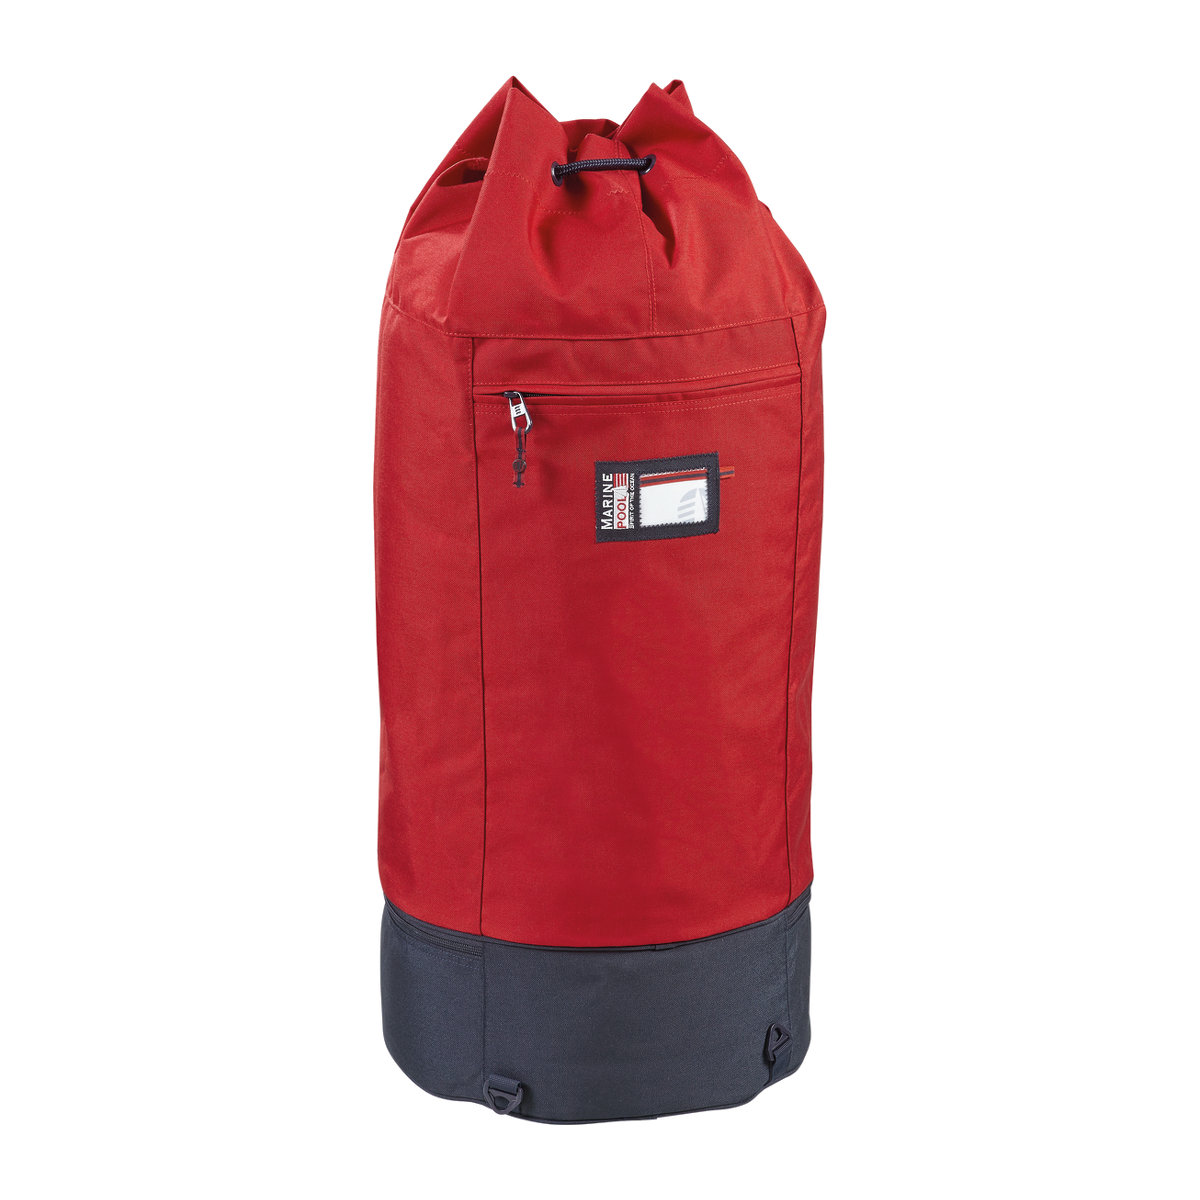 Marinepool Classic II sac marin - rouge/bleu marine, 110 L